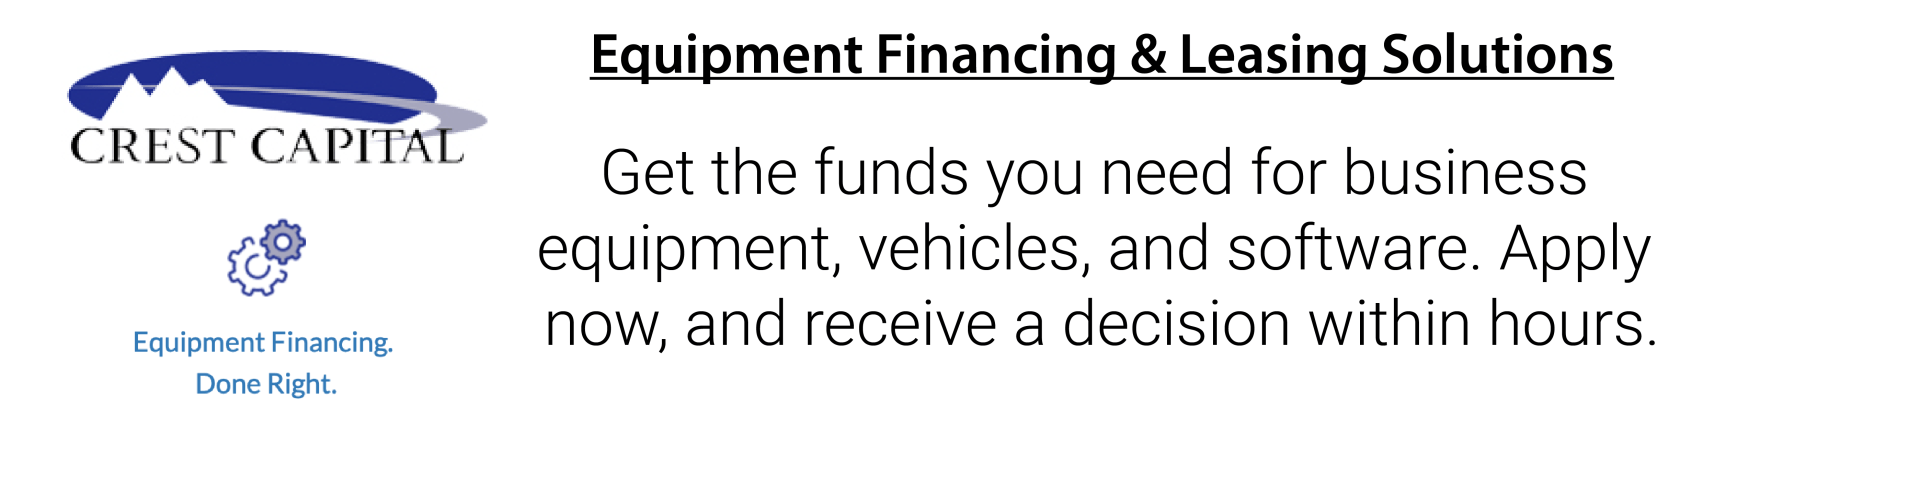 Equipment financing & leasing options